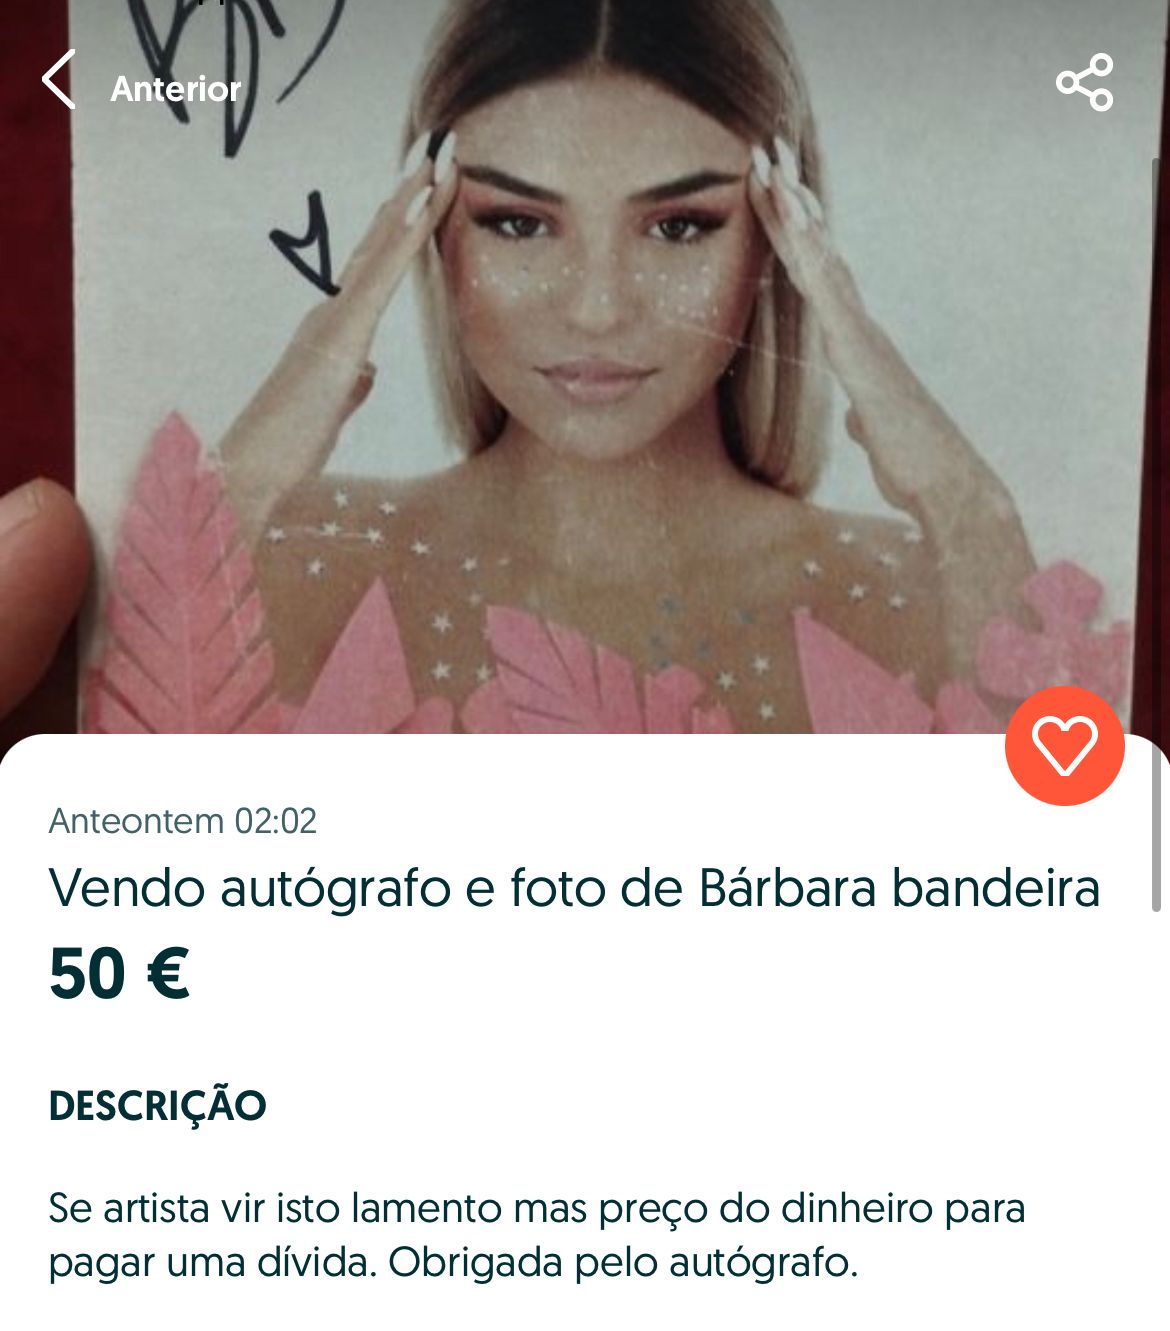 Autógrafo de Bárbara Bandeira à venda por 50 euros: &#8220;Se a artista vir isto, lamento&#8221;